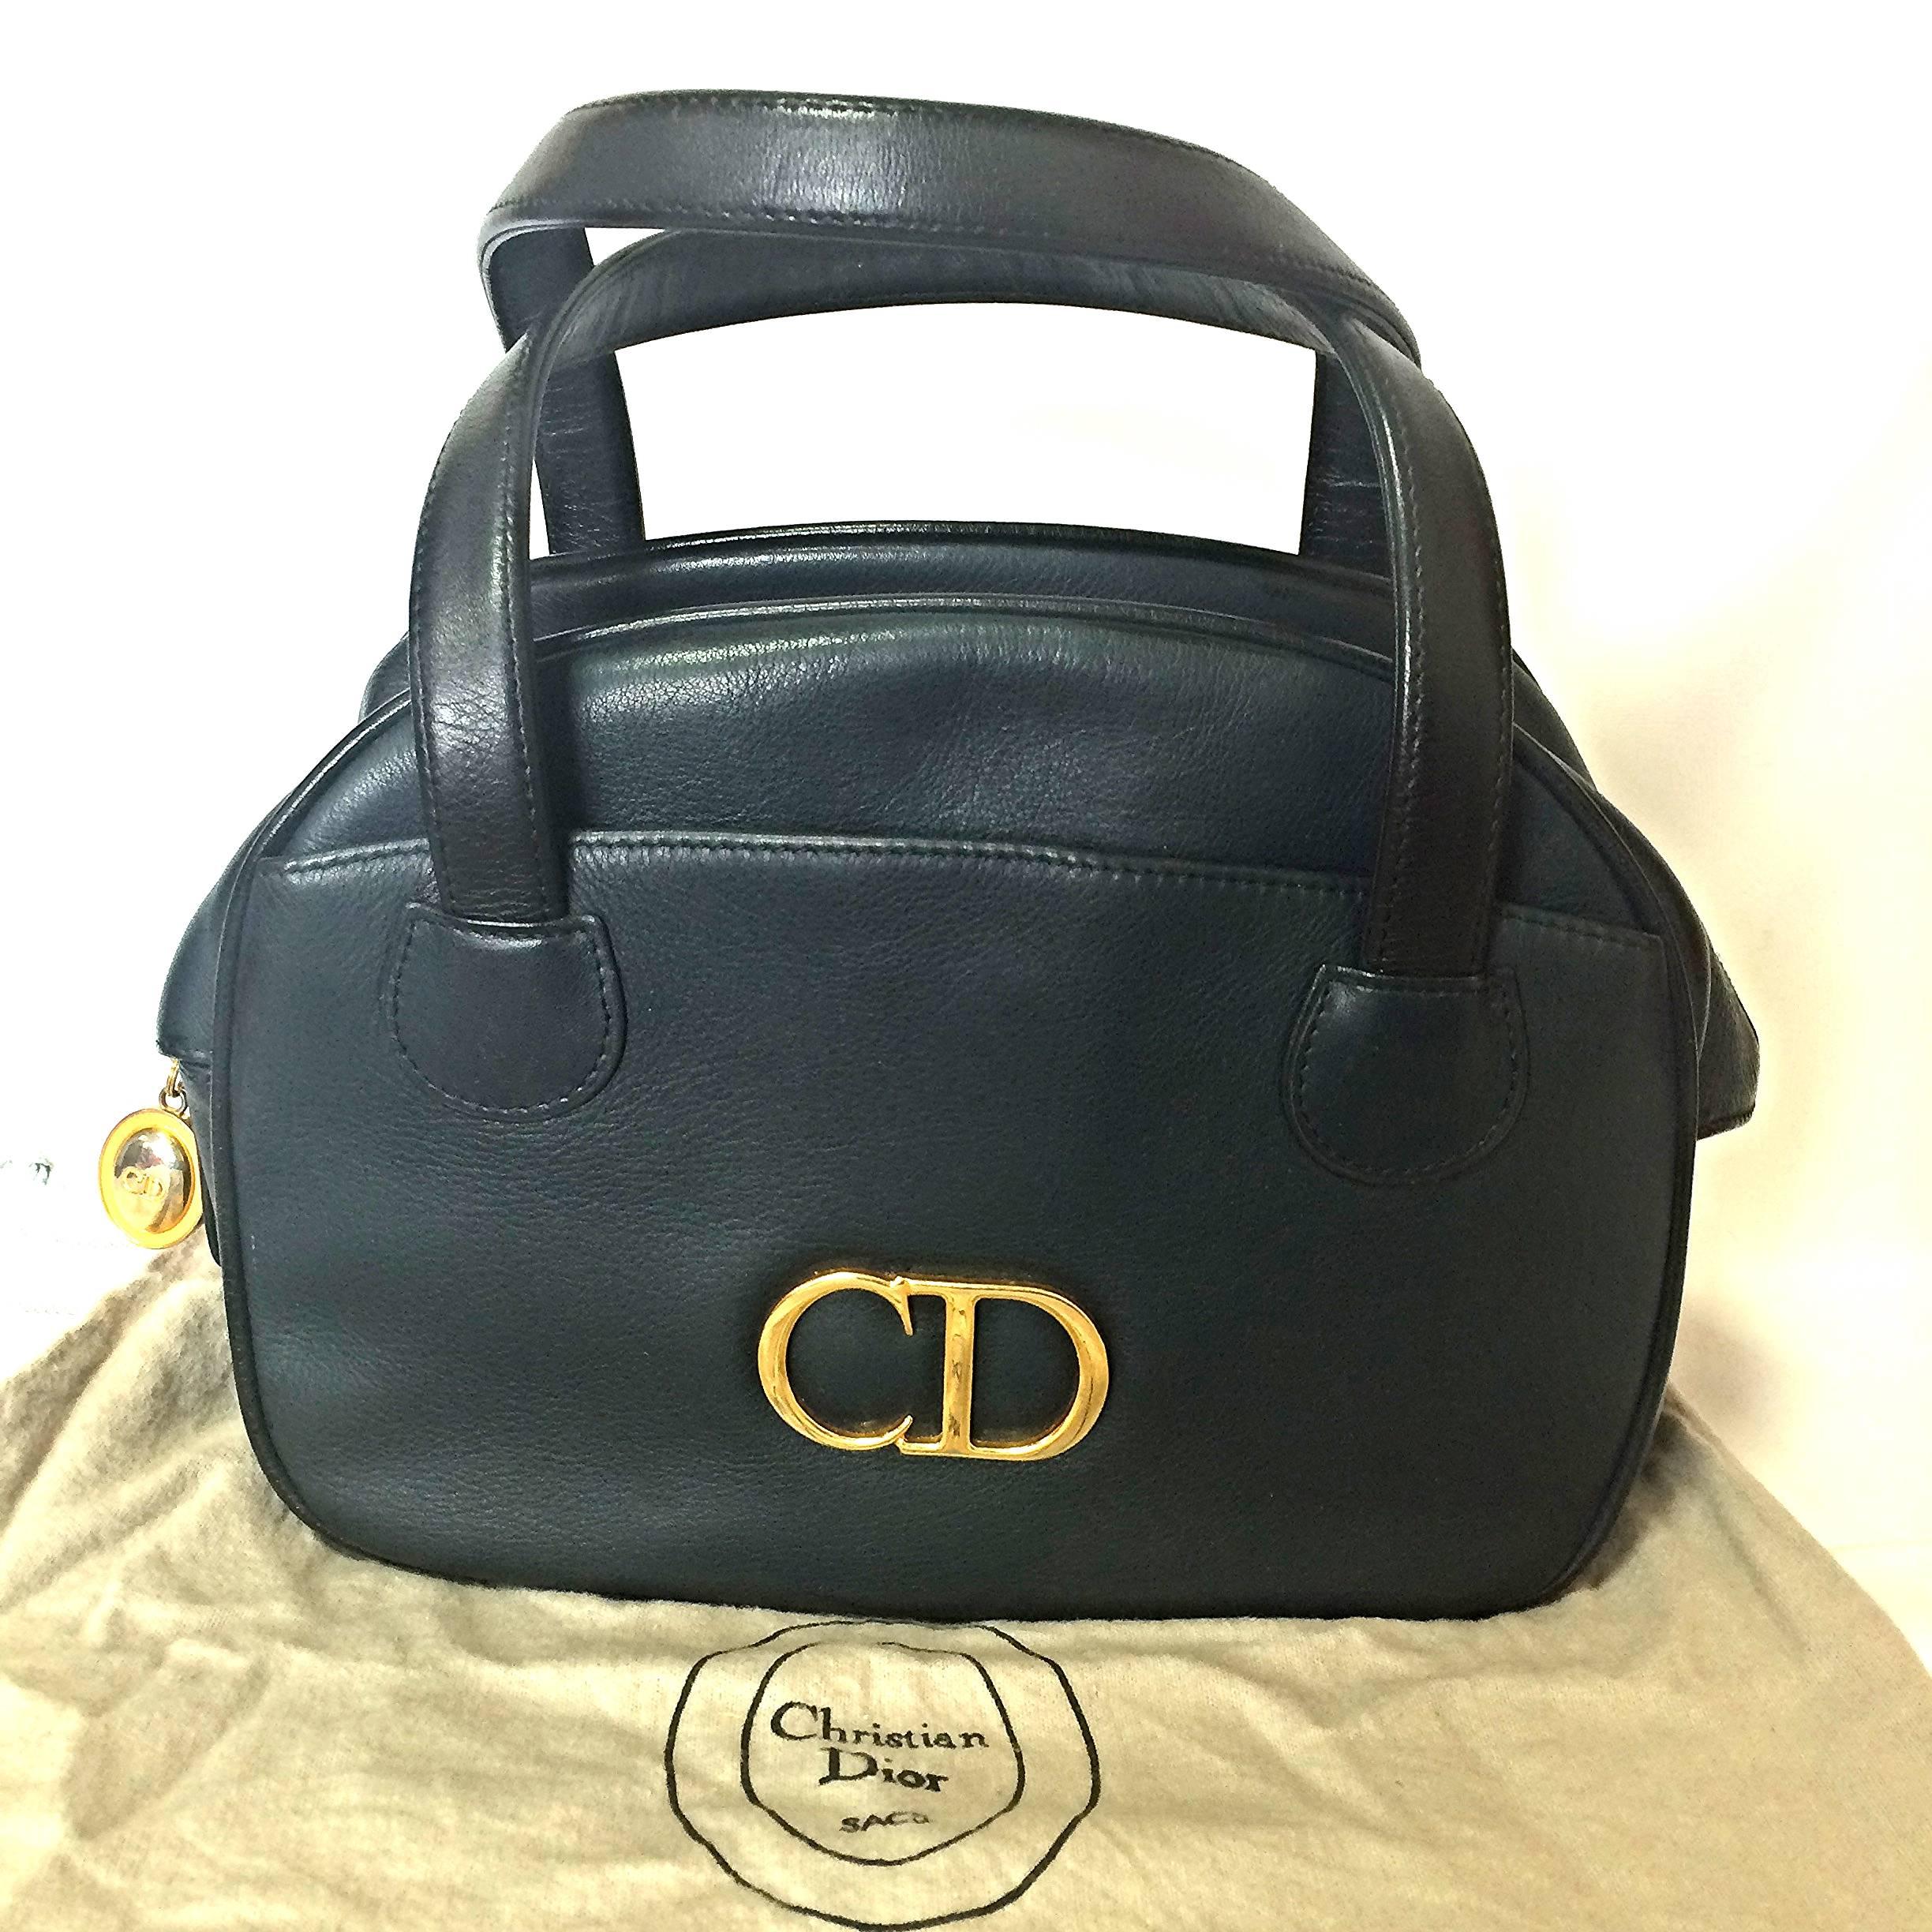 Vintage Christian Dior navy bolide style handbag with golden large CD logo motif 4